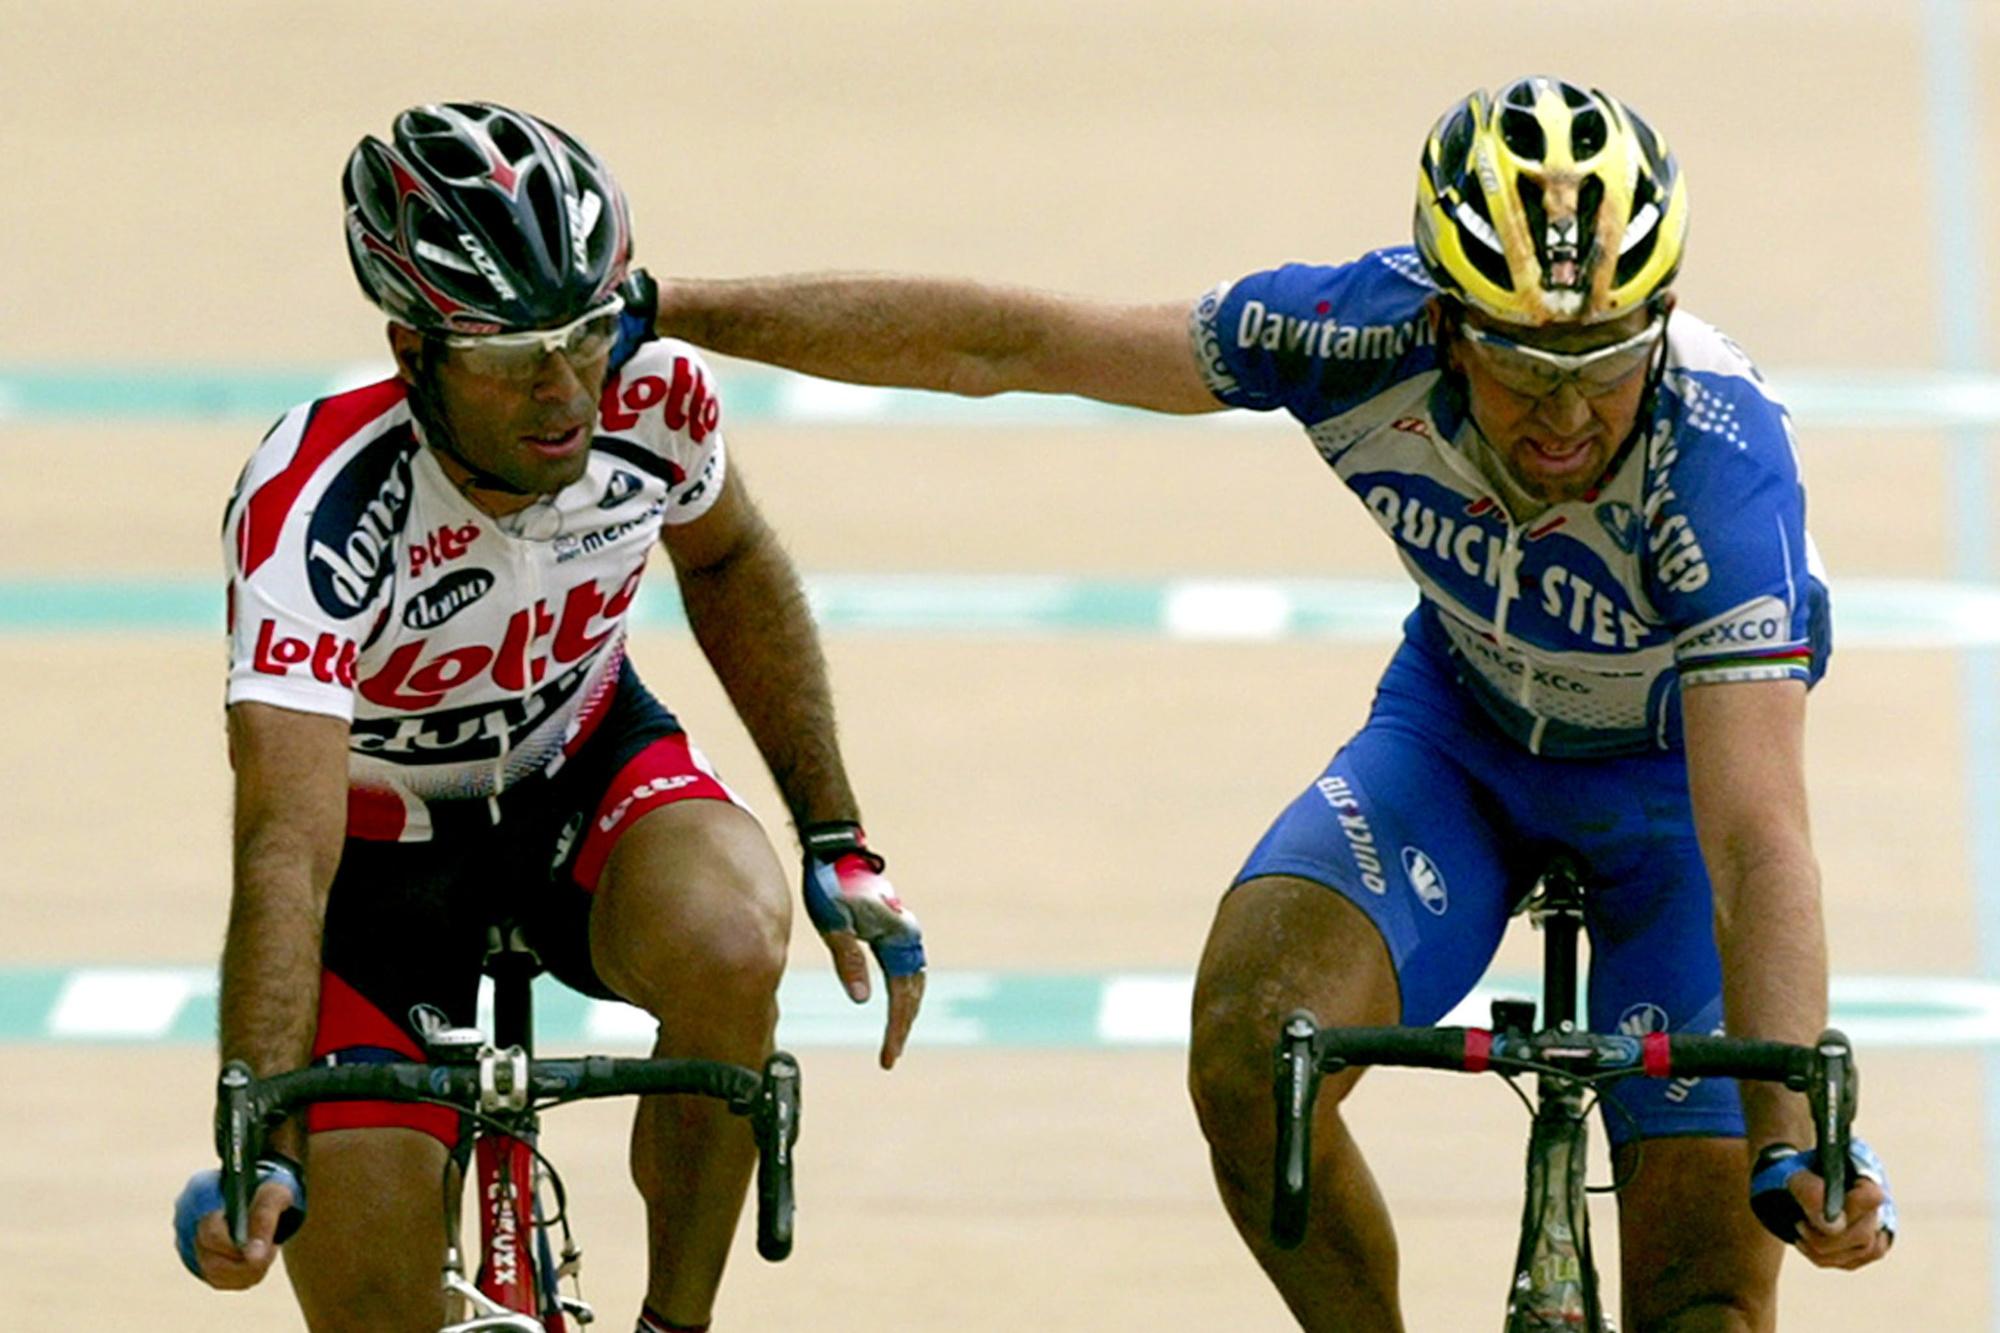 Pasen 2004: Peter Van Petegem en Johan Museeuw komen samen over de finishin Parijs-Roubaix, geveld door veel materiaalpech moesten ze de zege aan Magnus Bäckstedt laten.